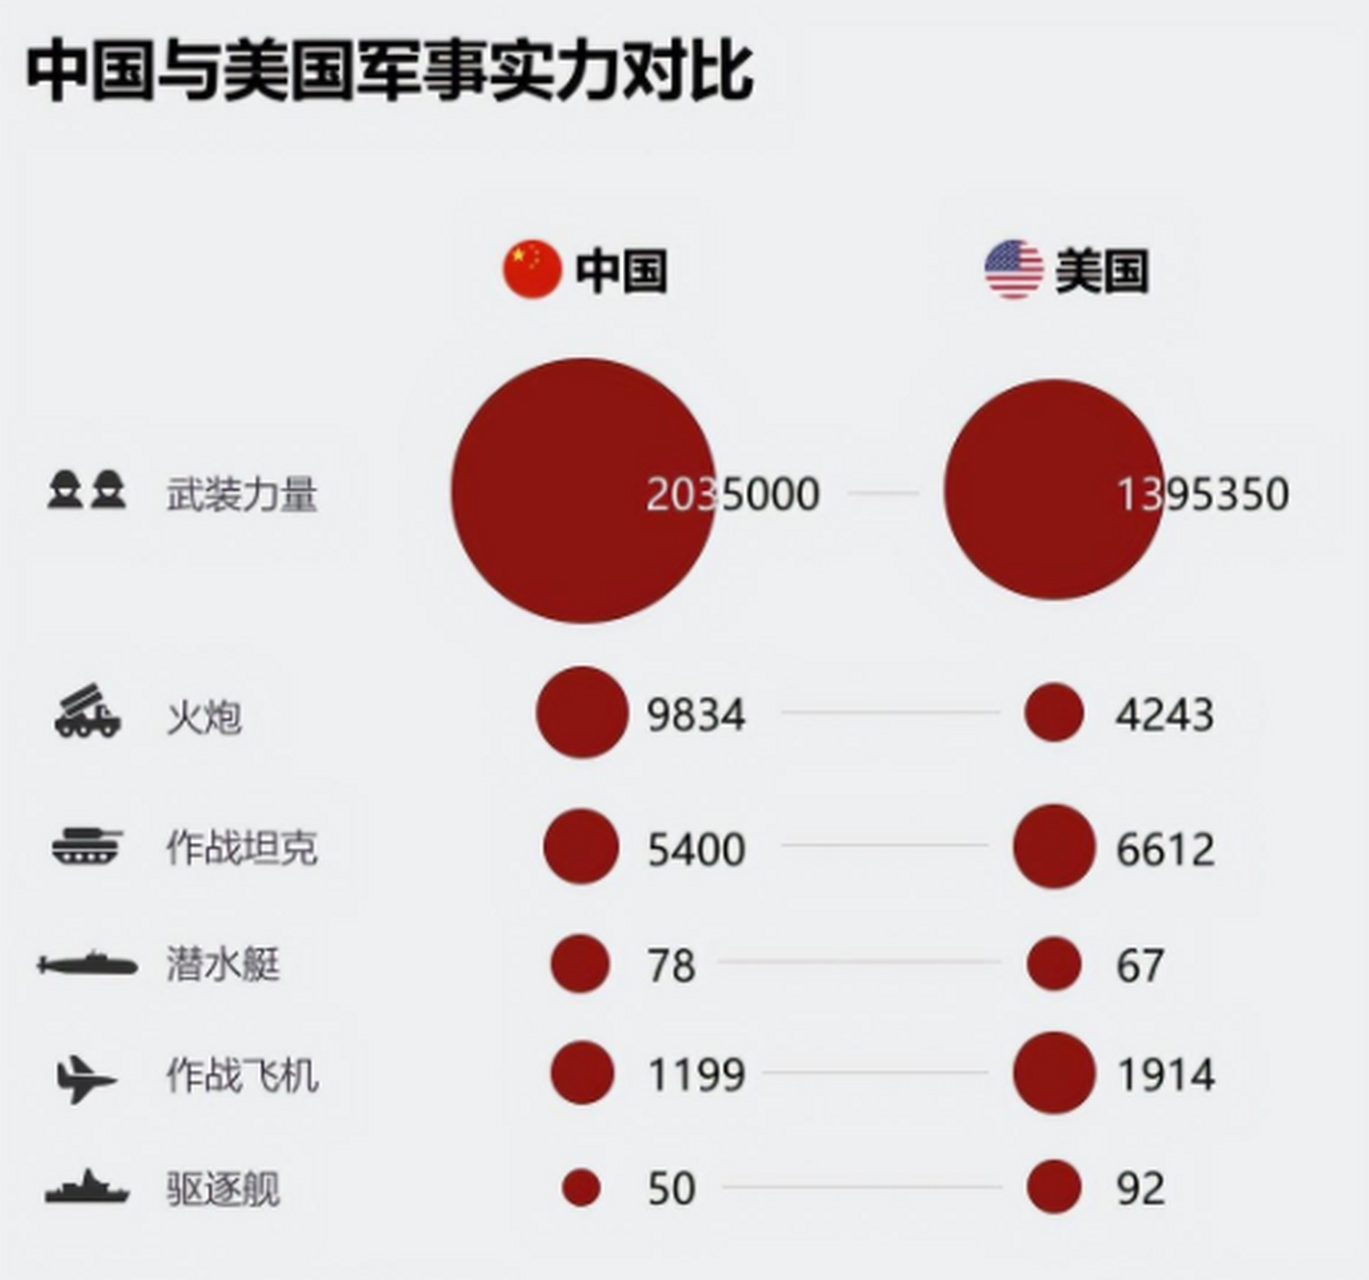 一图看清中美军力对比,俄媒:中国除兵员和火炮,其余都处于劣势 俄罗斯